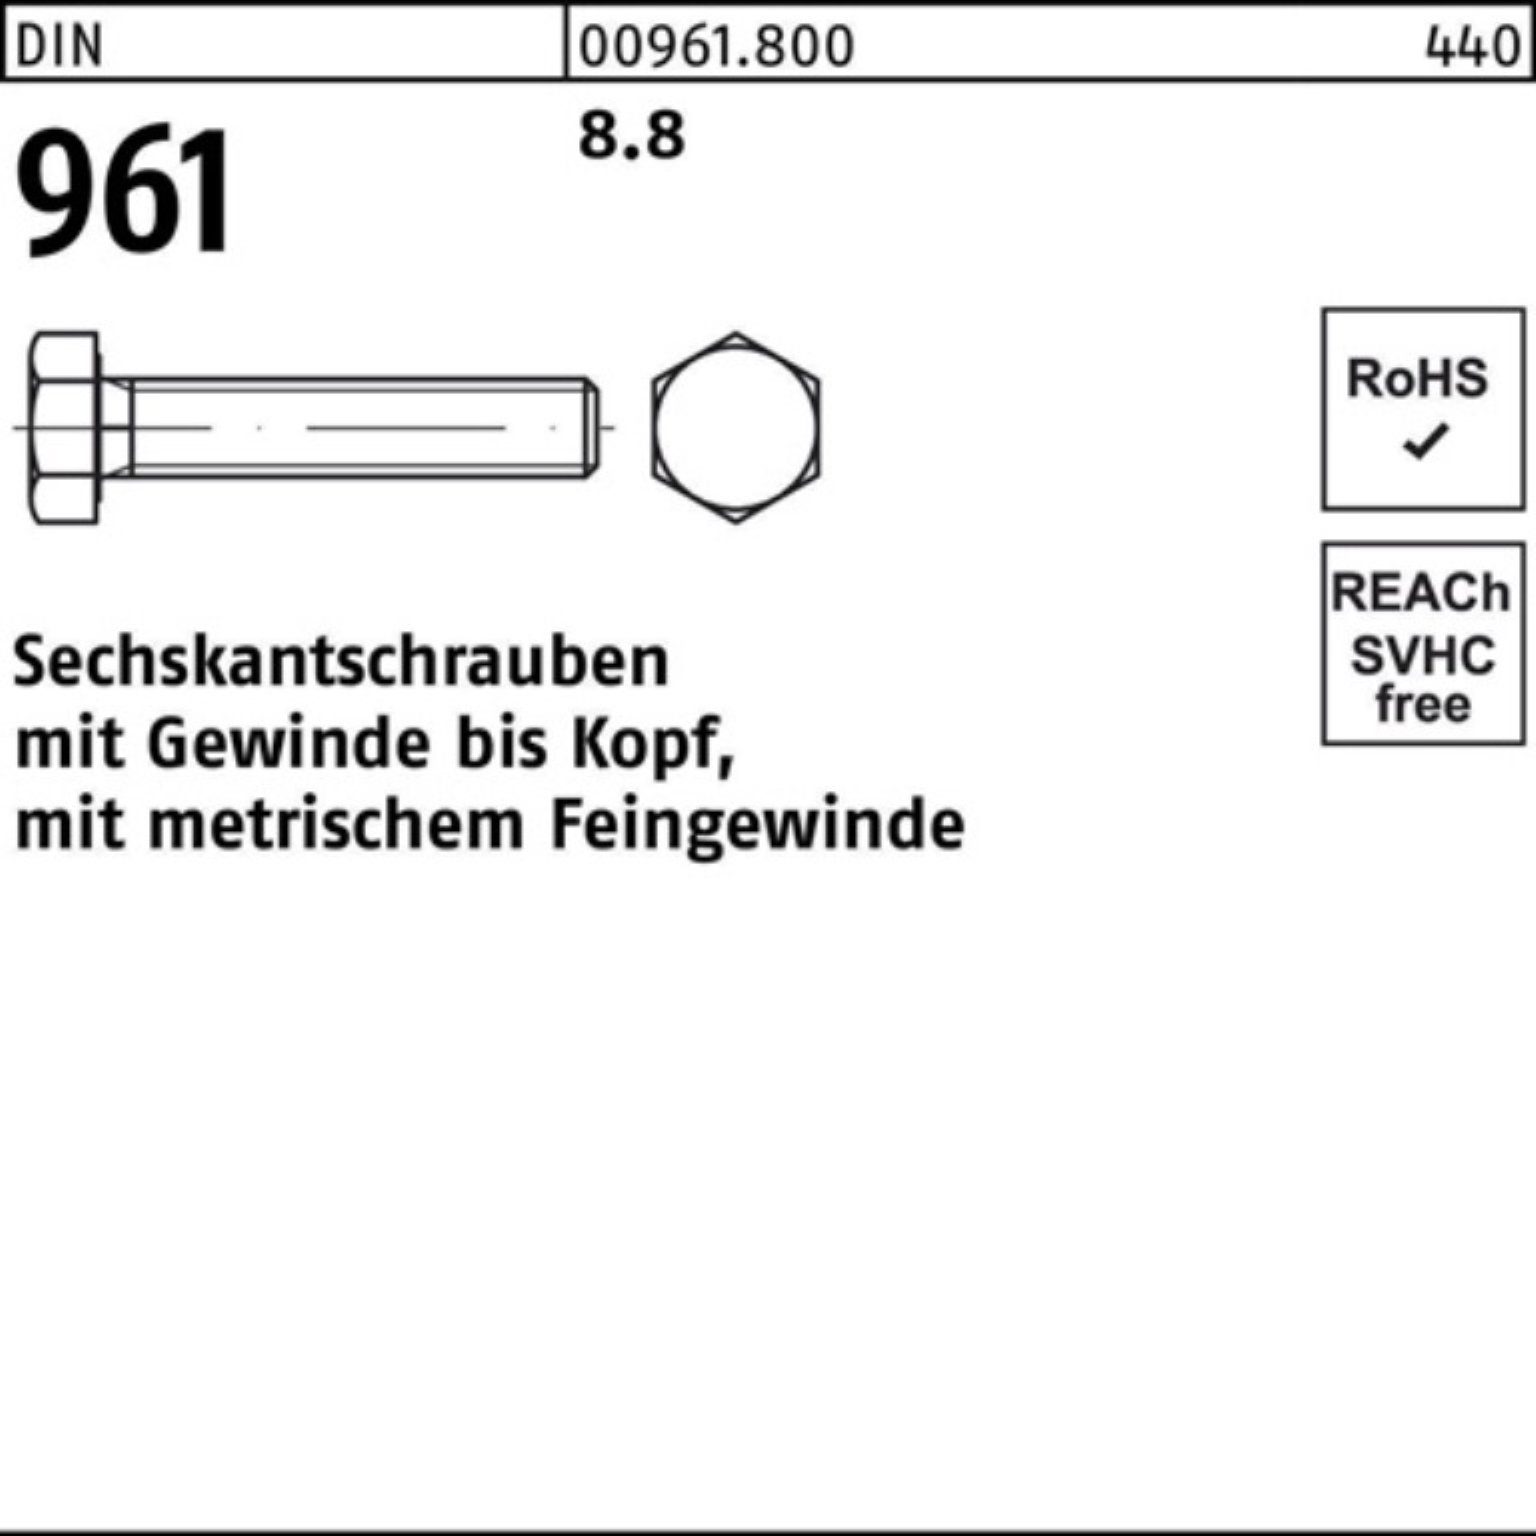 Reyher Sechskantschraube 100er DIN VG DIN 961 50 M12x1,5x130 Sechskantschraube Stück Pack 8.8